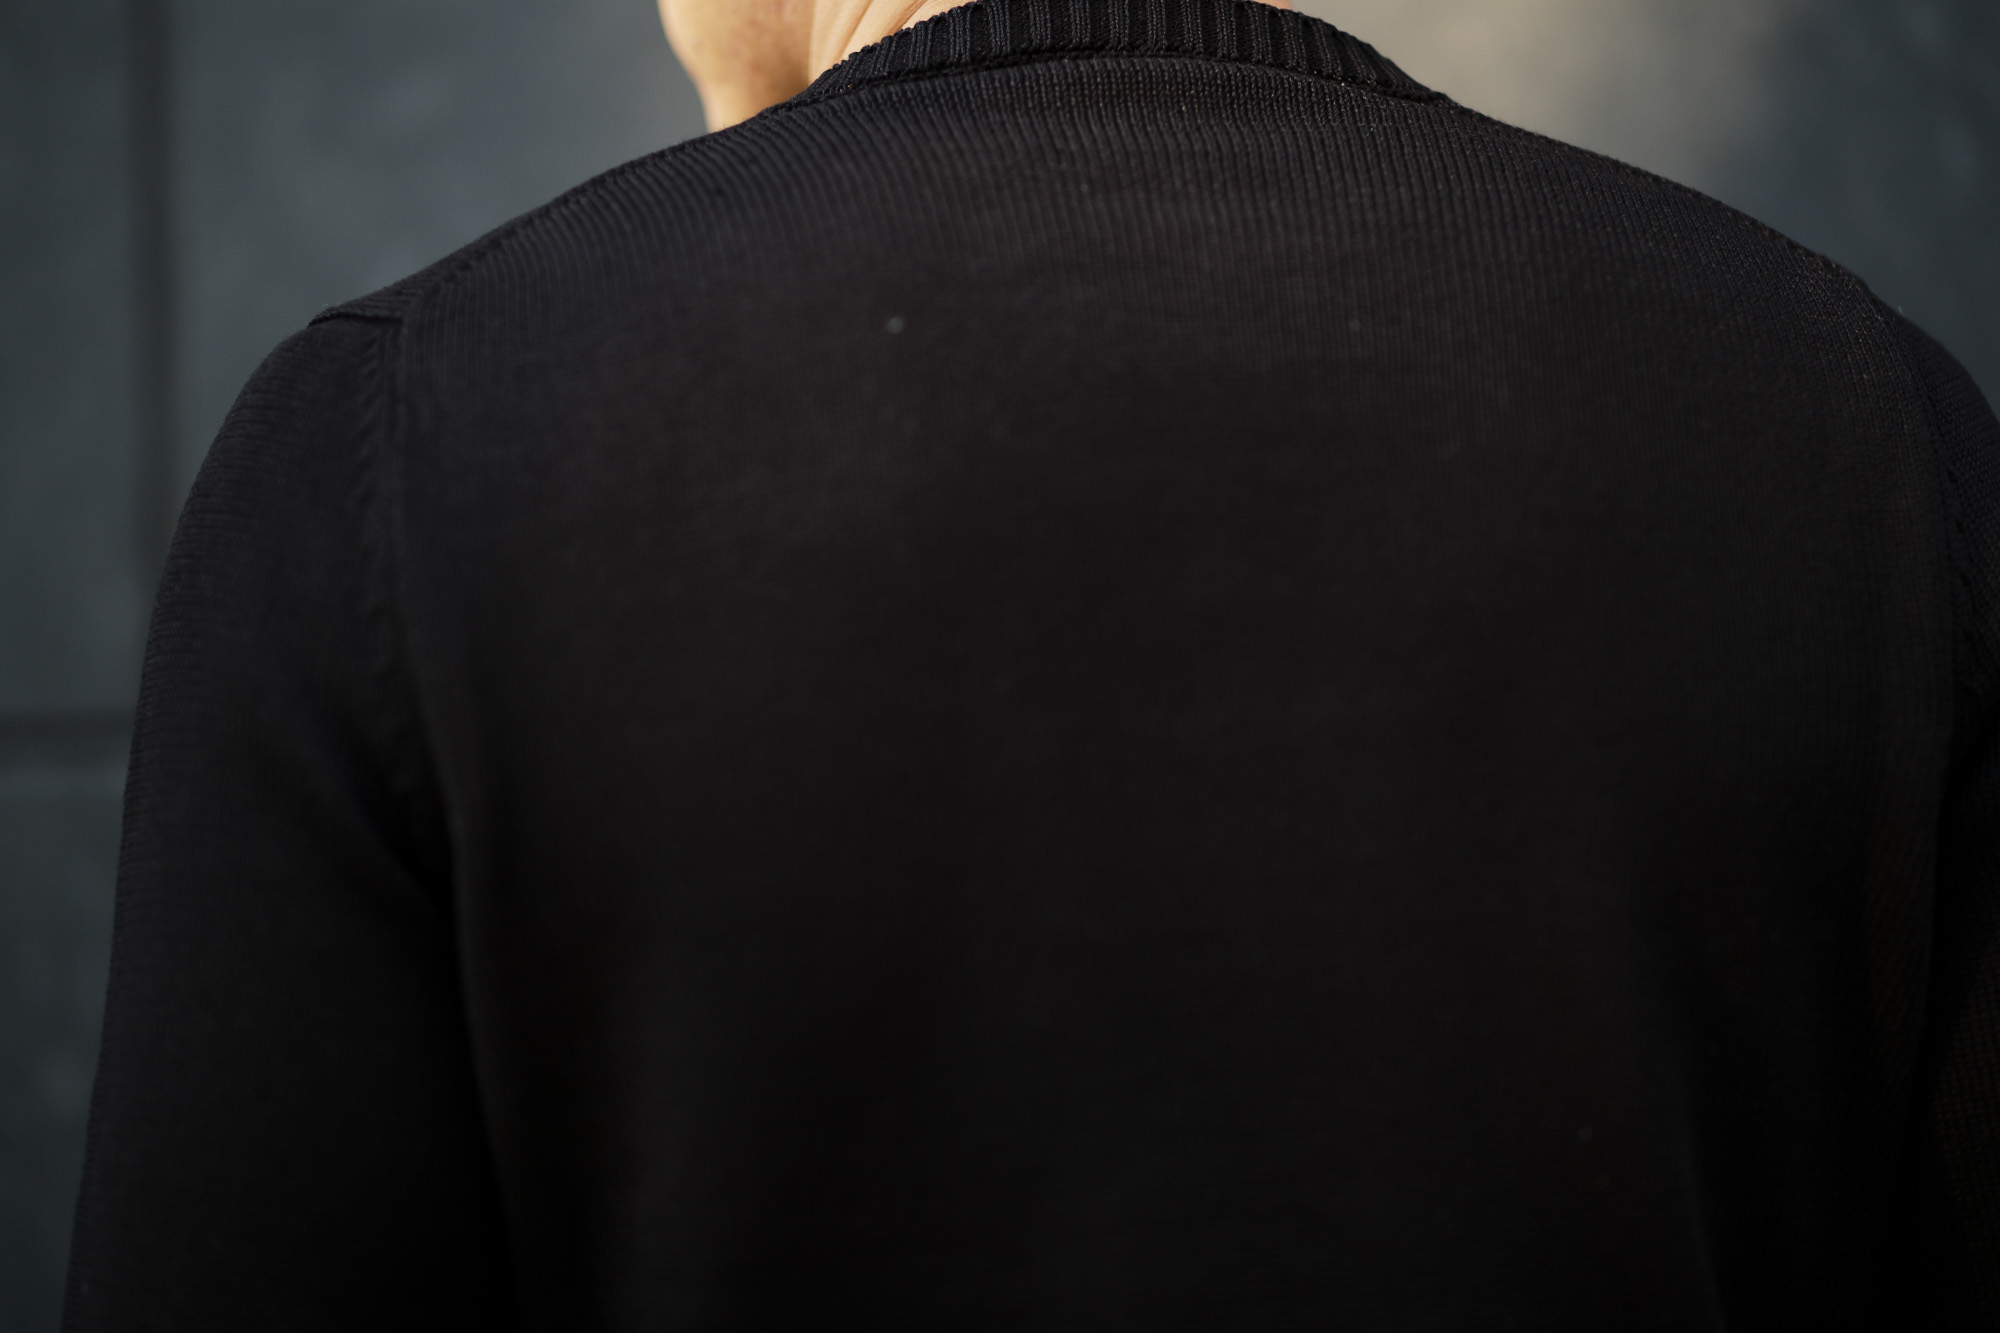 ZANONE(ザノーネ) Crew Neck Sweater (クルーネック セーター) リネンコットン ミドルゲージ サマー ニット セーター BLACK (ブラック・Z0015) made in italy (イタリア製) 2020 春夏新作 愛知 名古屋 altoediritto アルトエデリット